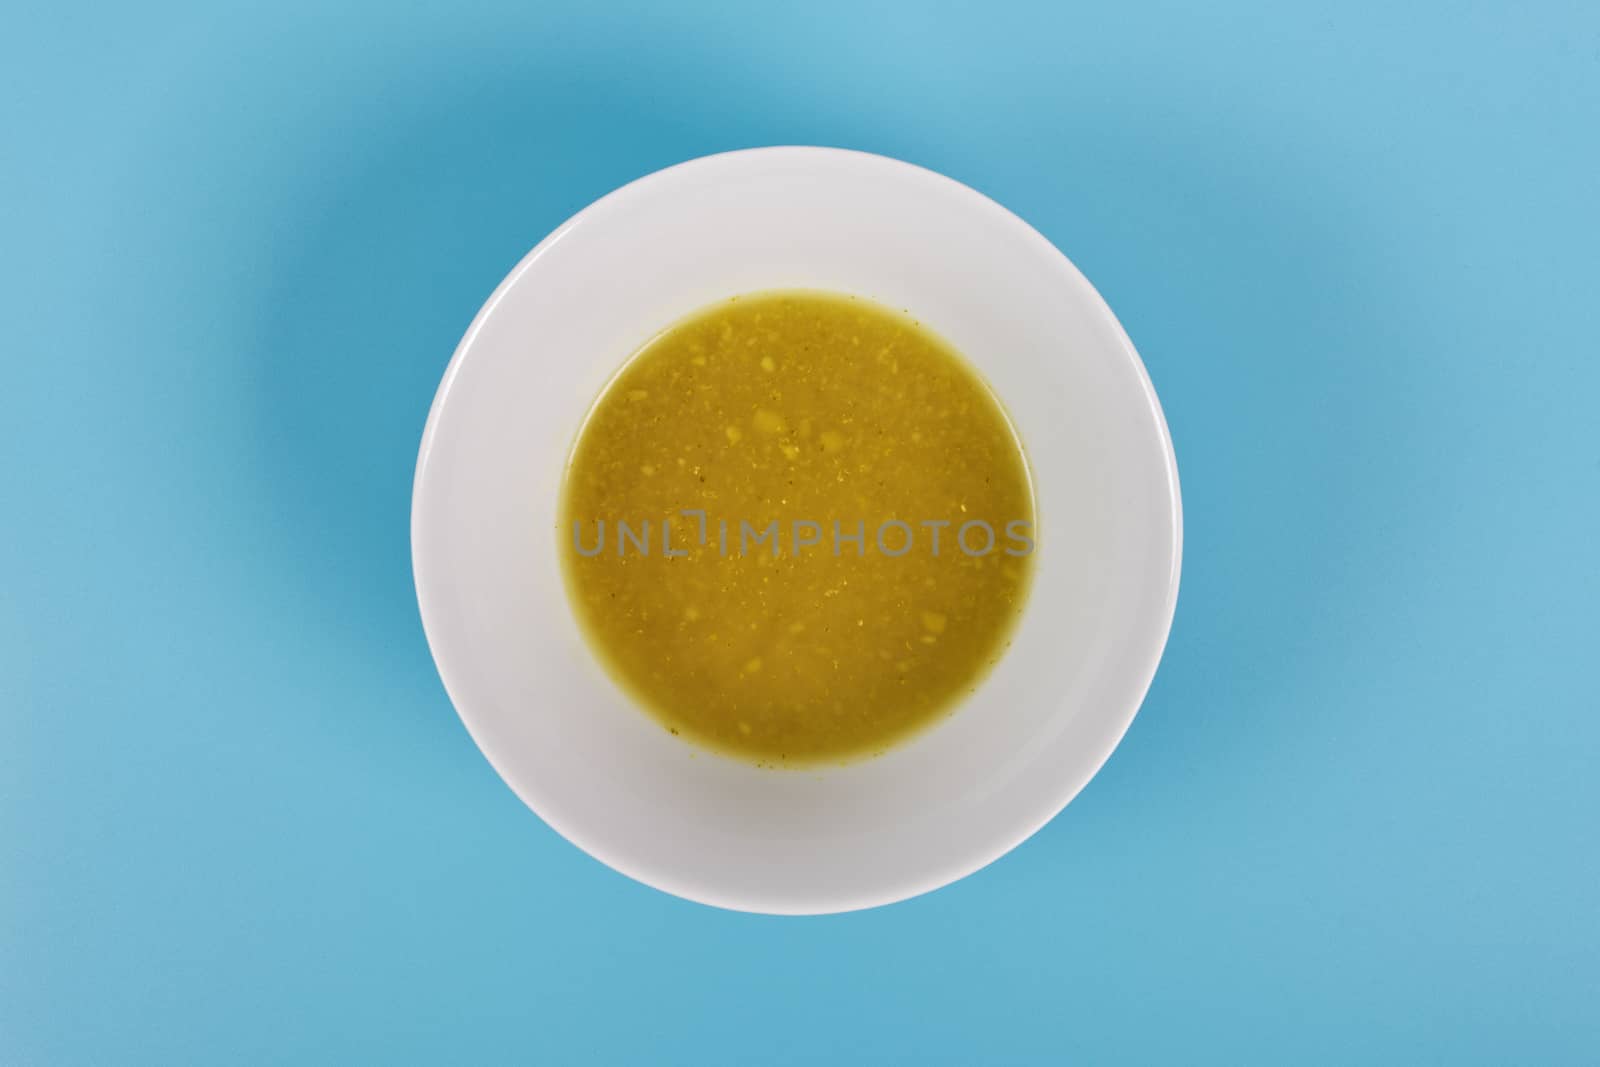 Creamy broccoli soup on a blue background